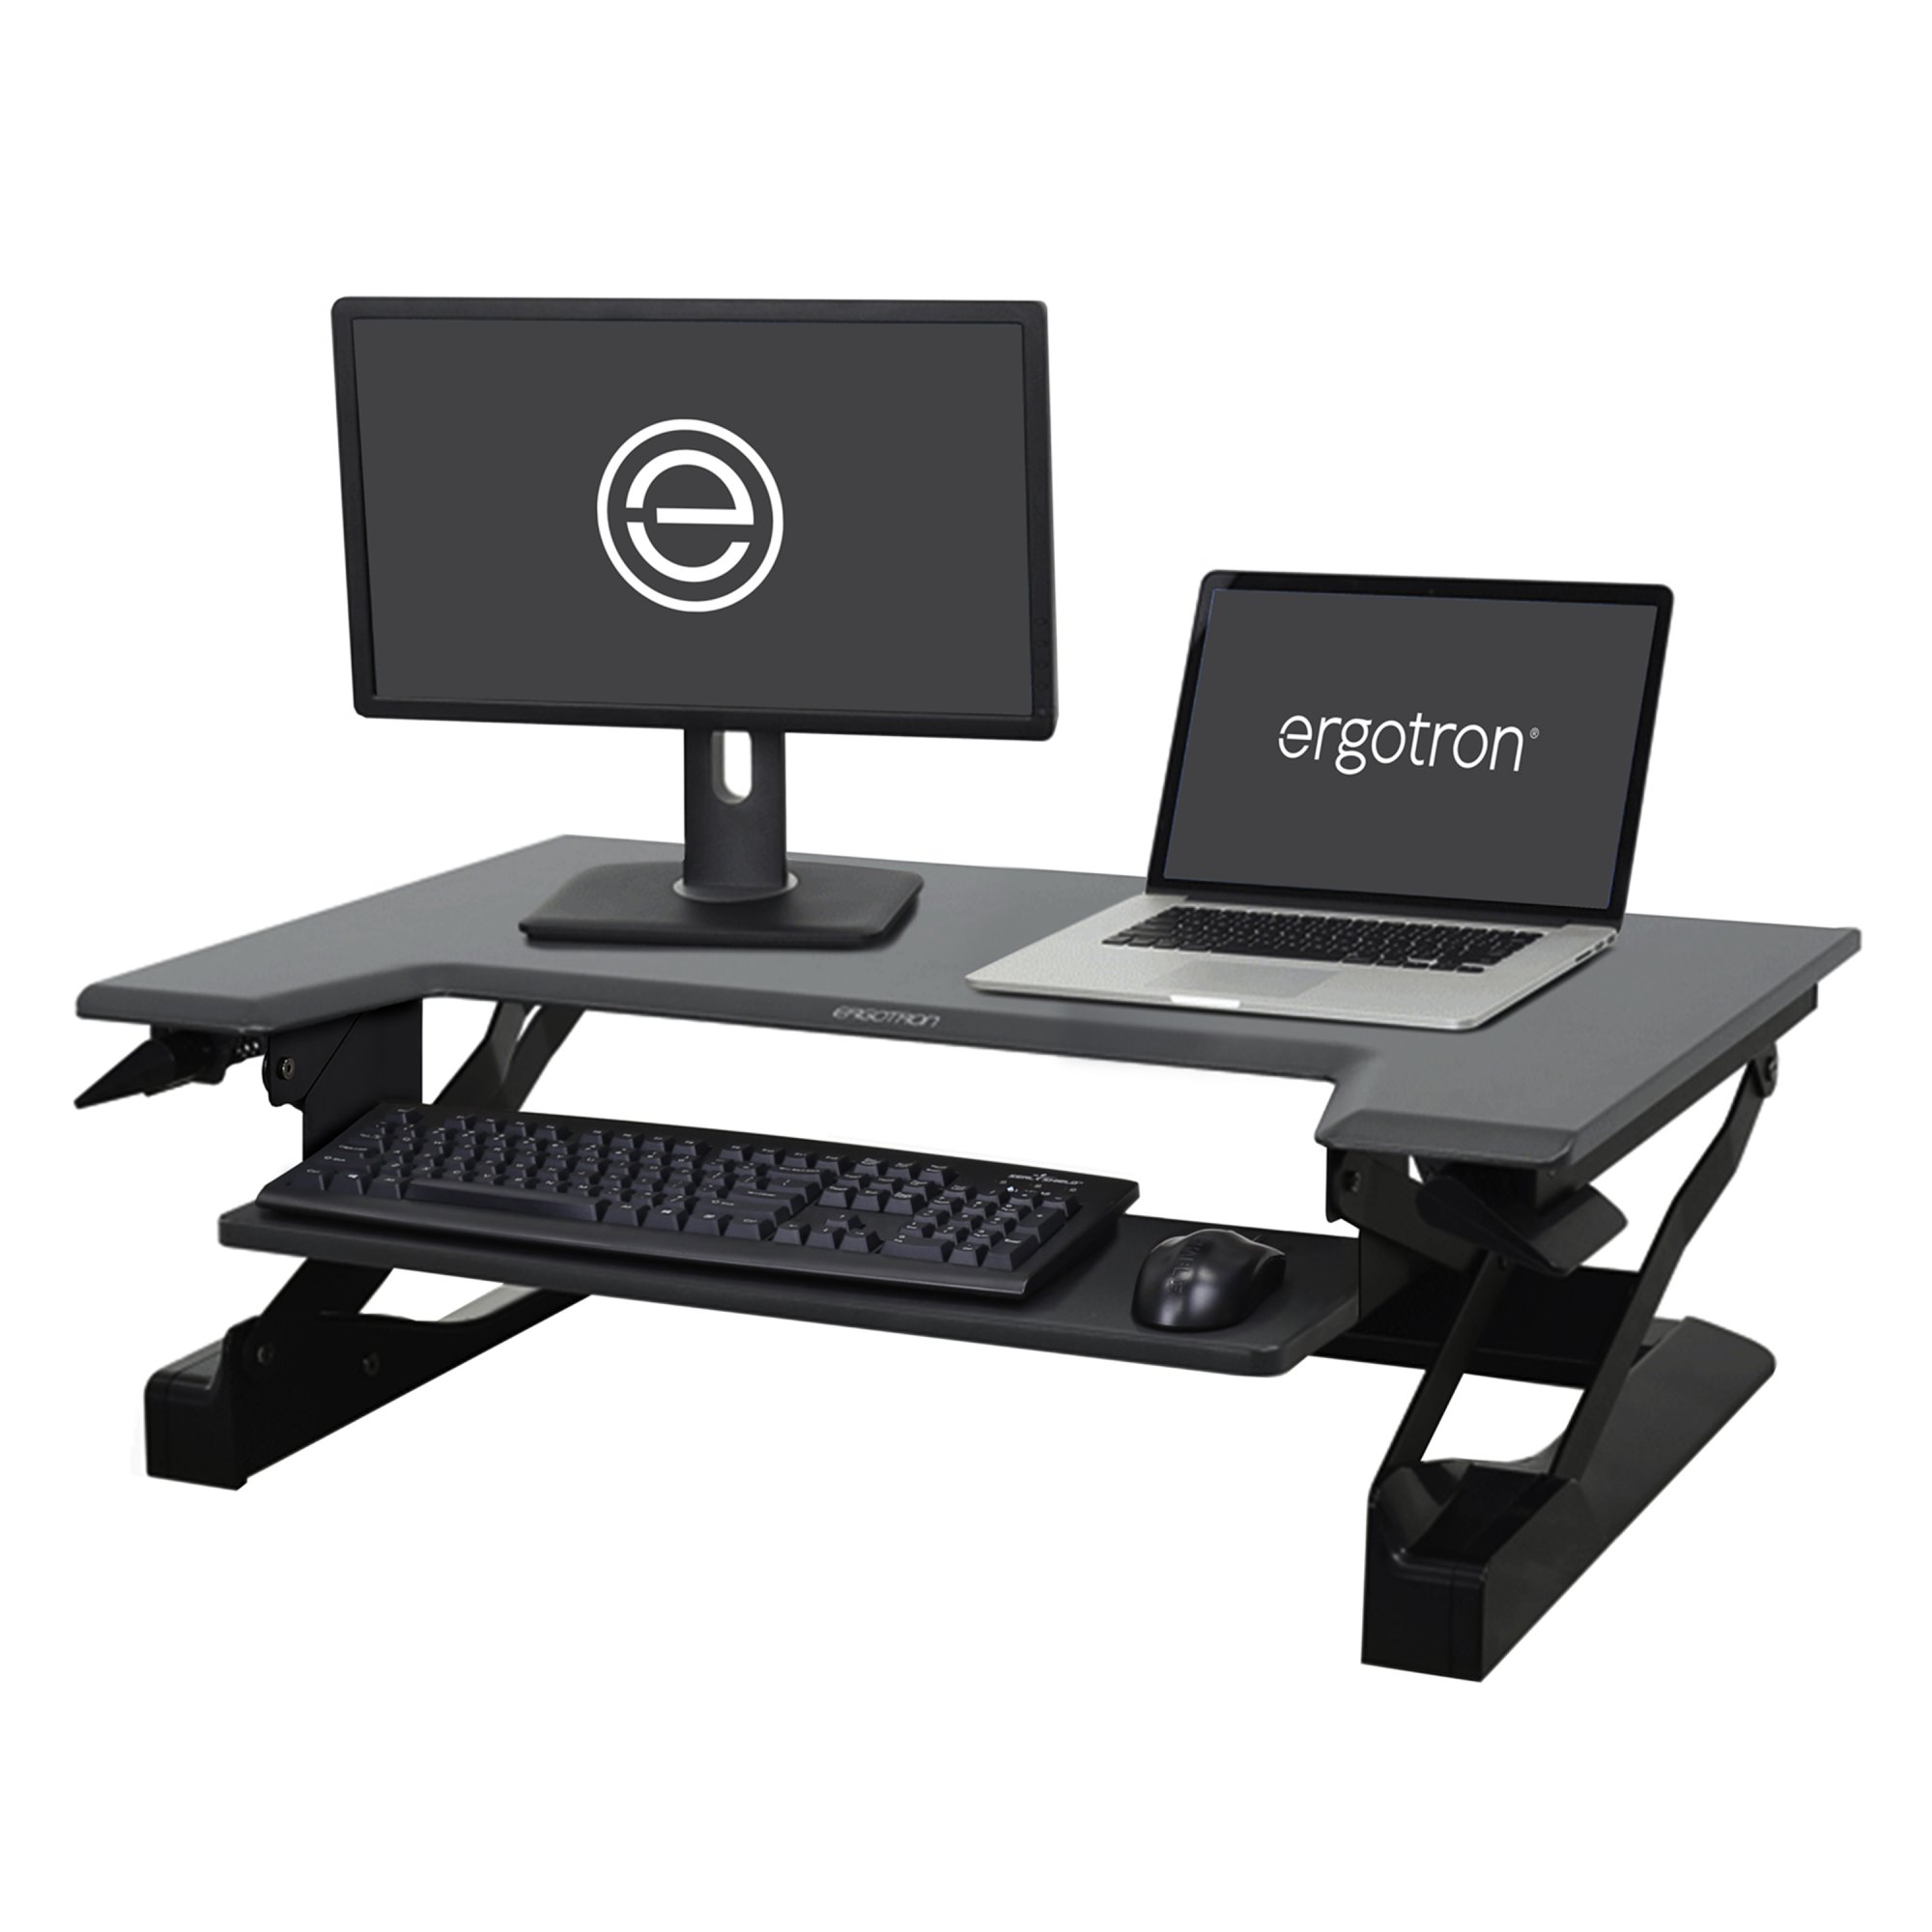 Ergotron 33-397-085 WorkFit-T Sit-Stand Desktop Workstation in Black